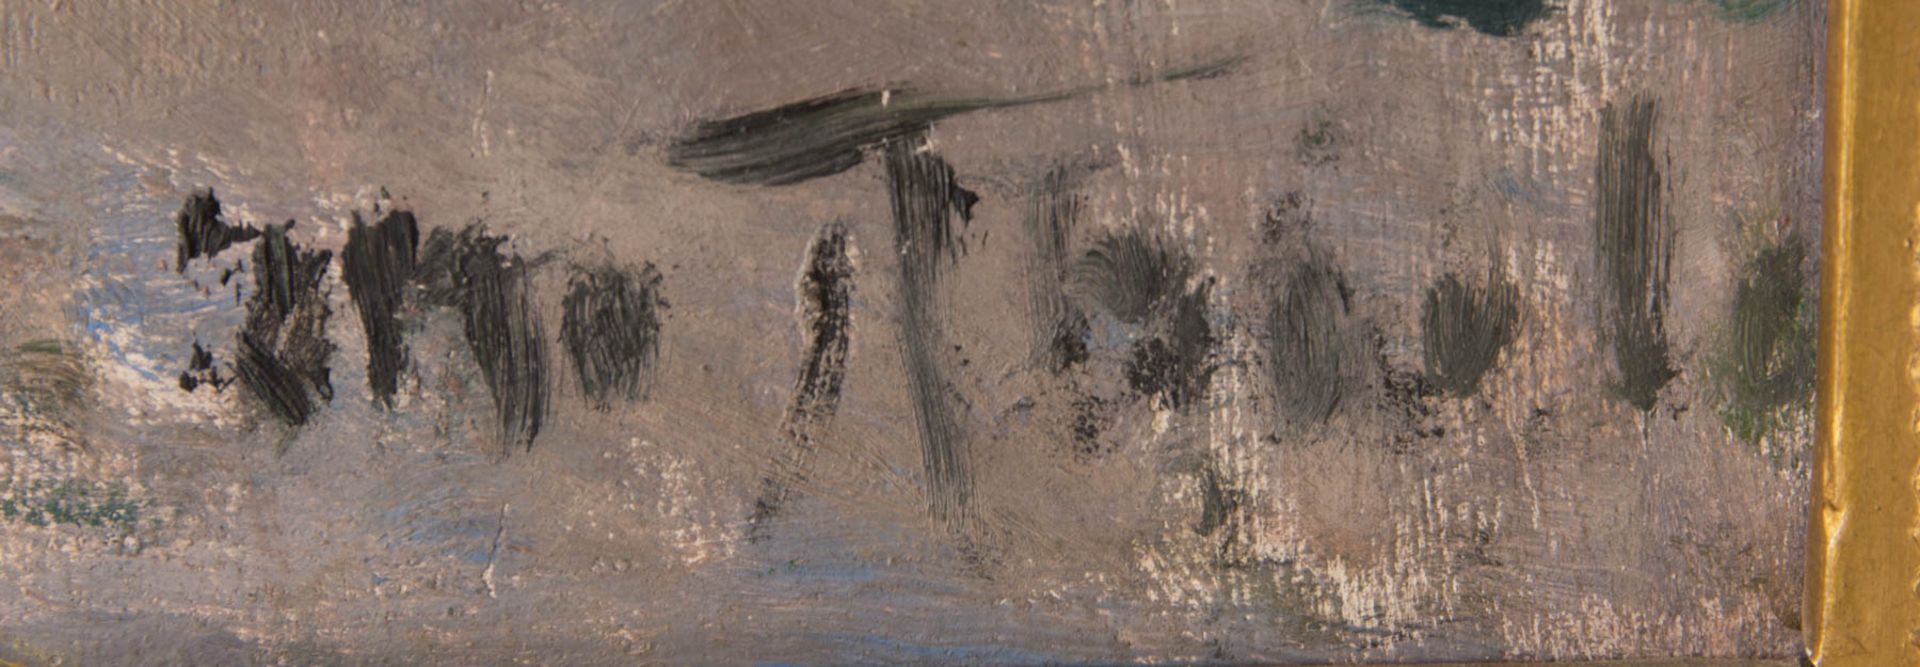 Otto Thiele, Impressionistischer Spaziergang, Öl auf Holz, 20. Jh. - Bild 2 aus 6